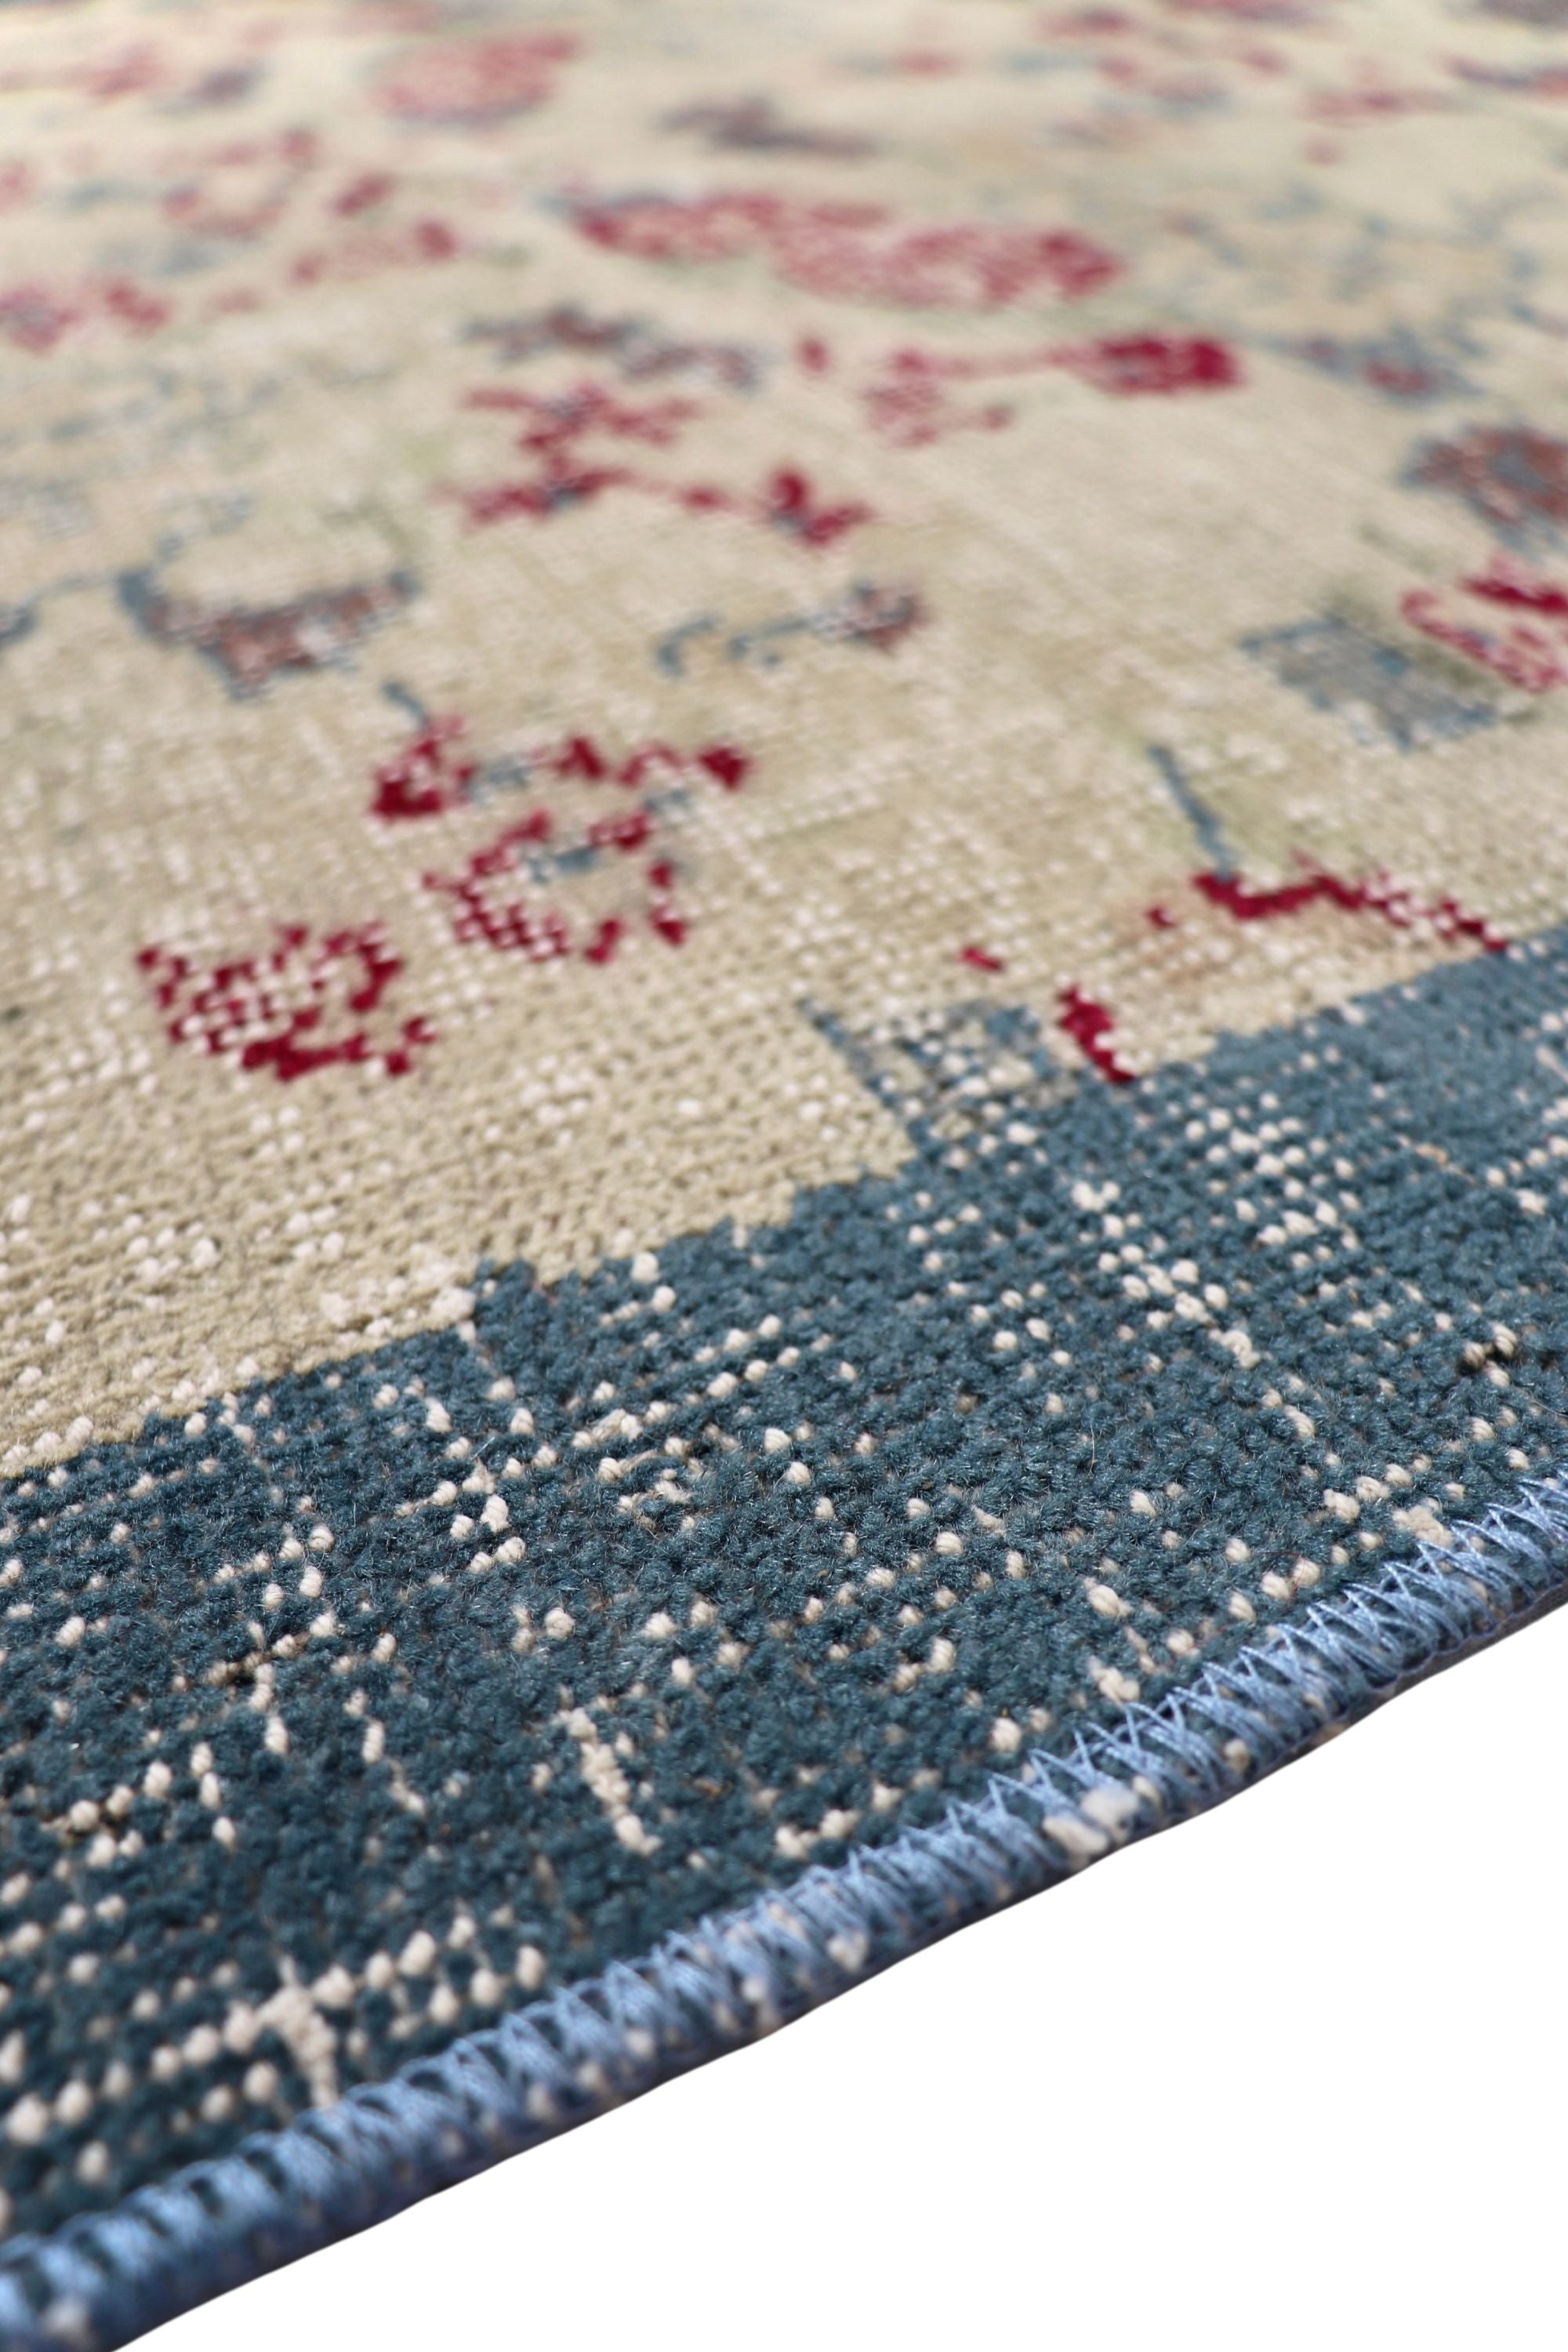 Vintage rug with blue border